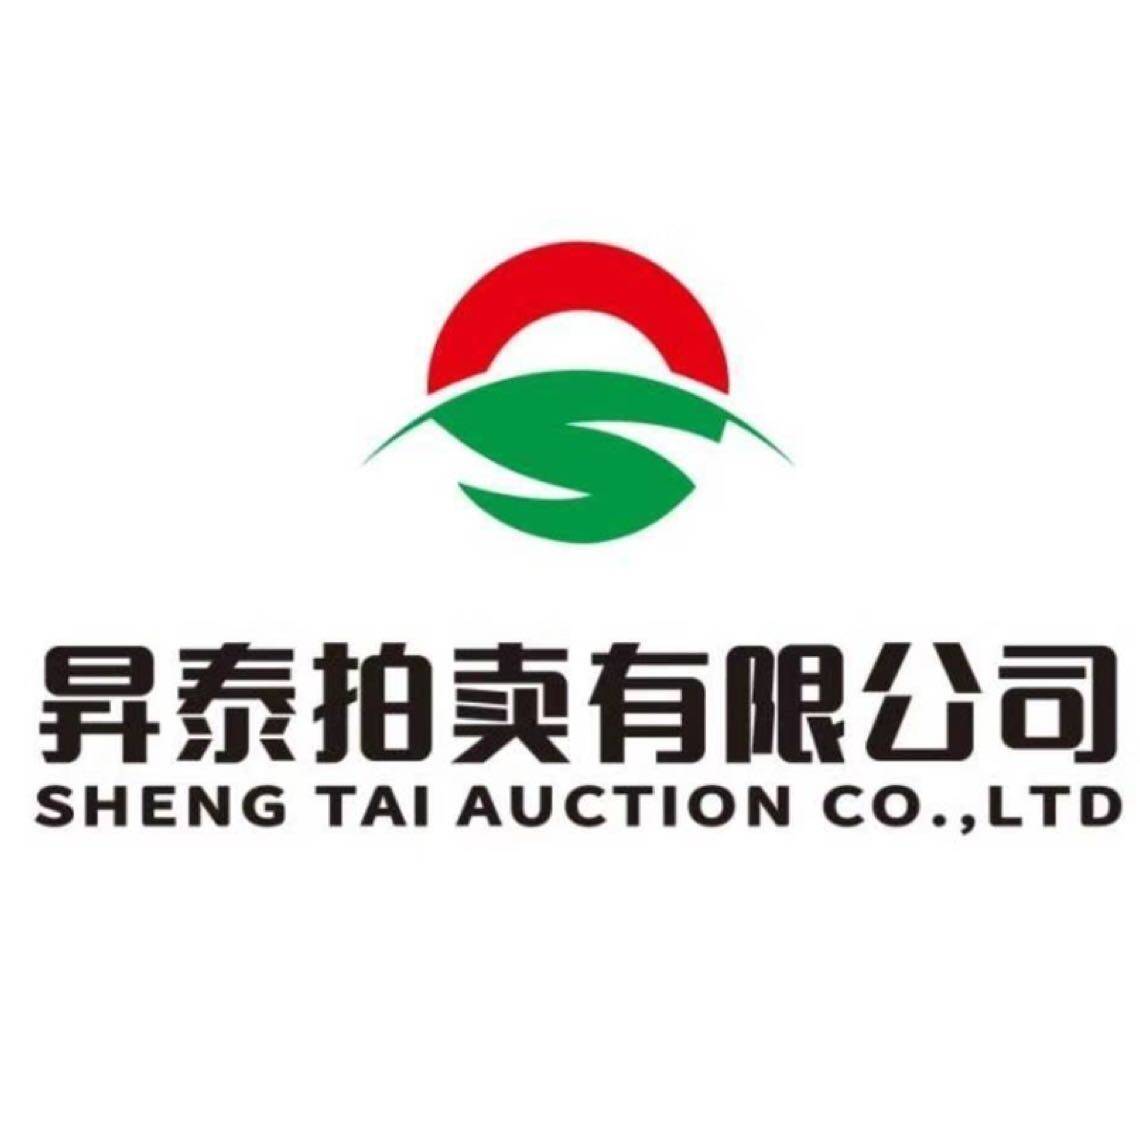 东莞市昇泰拍卖有限公司logo